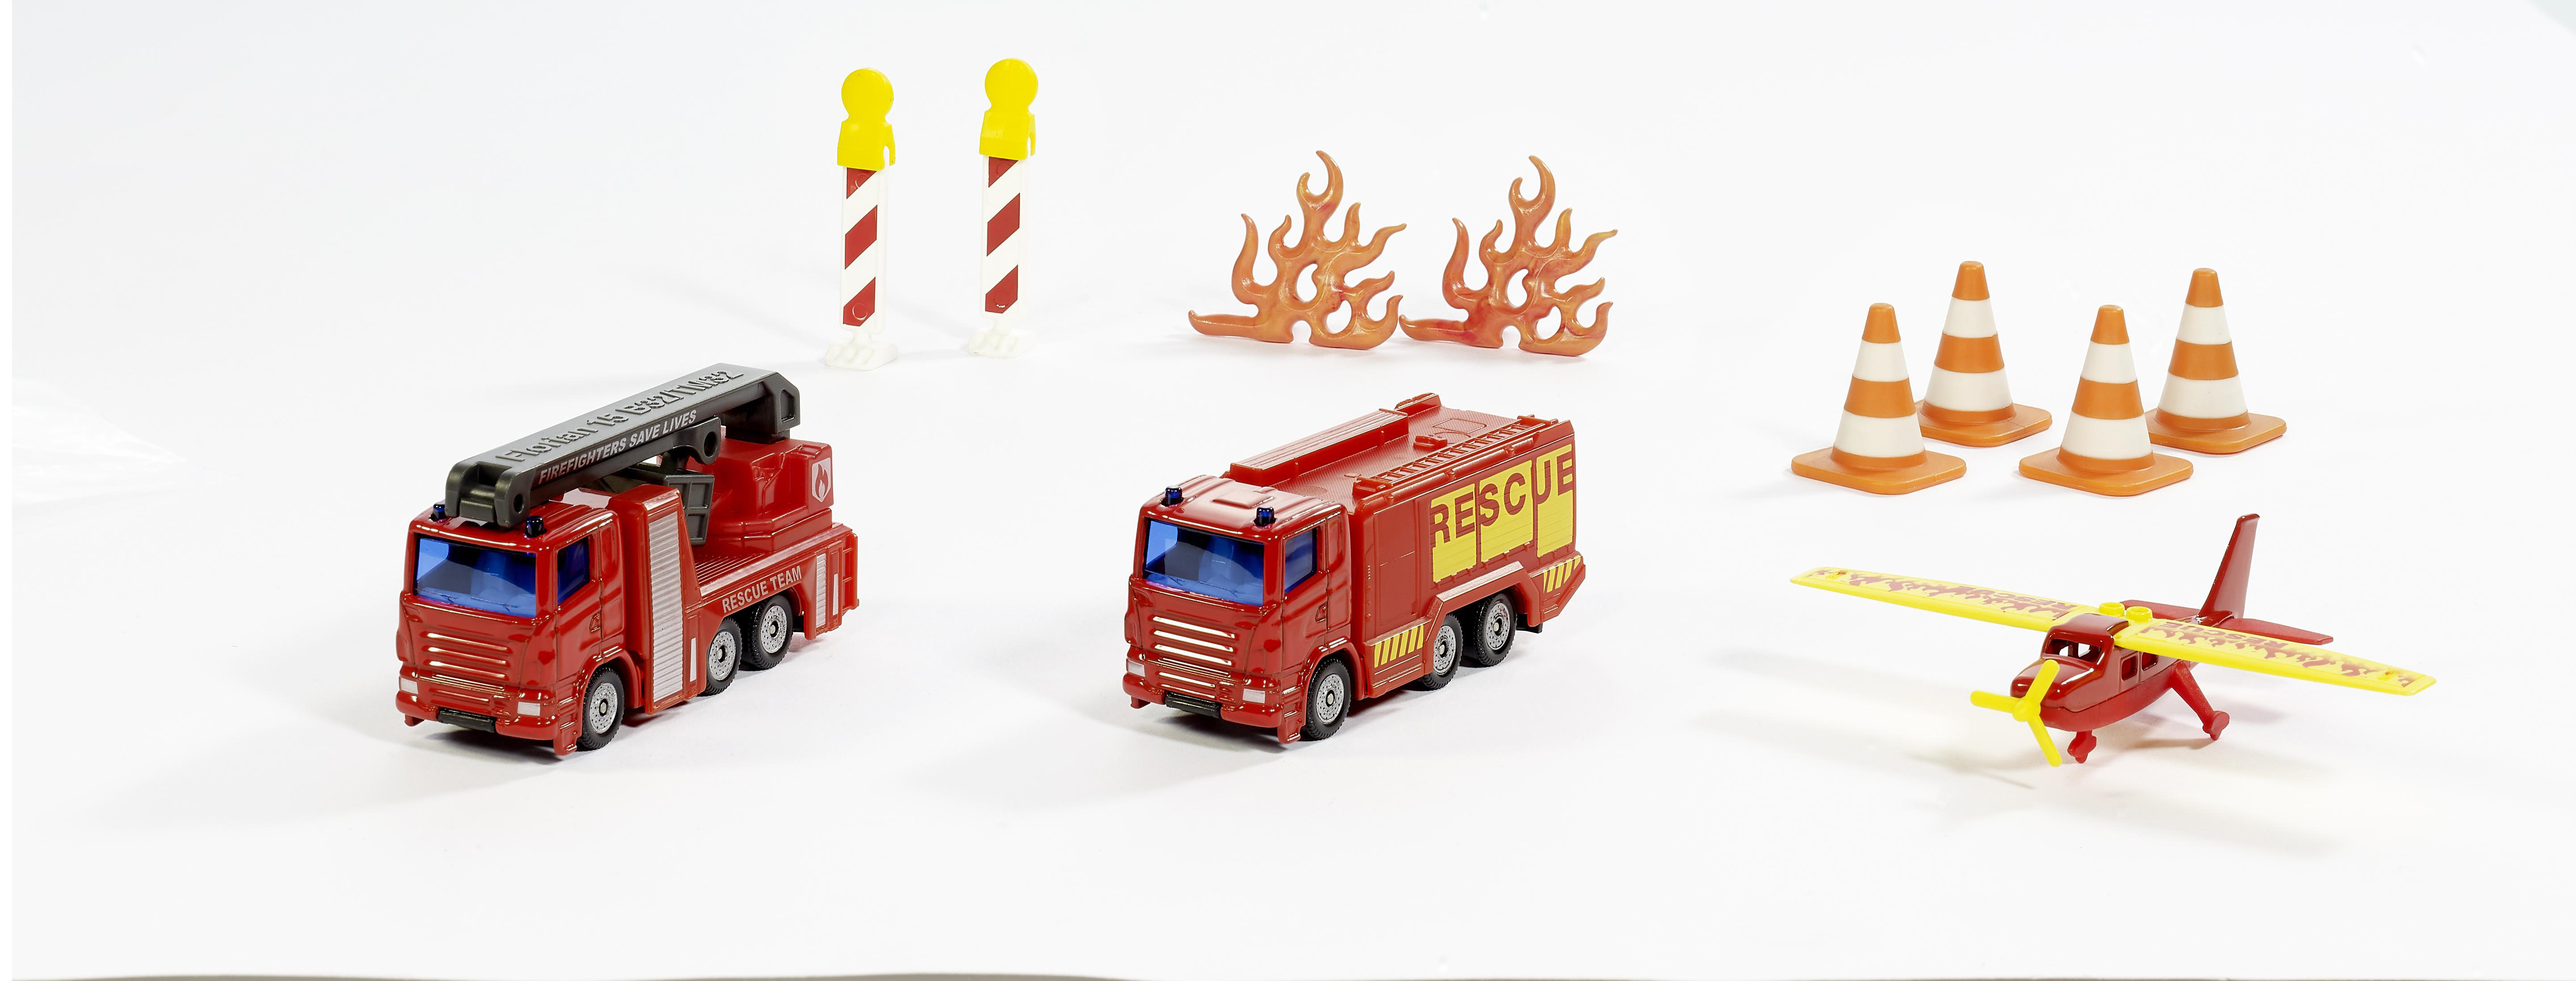 SIKU 6330 Mehrfarbig Feuerwehr Geschenkset Spielzeugmodellfahrzeug